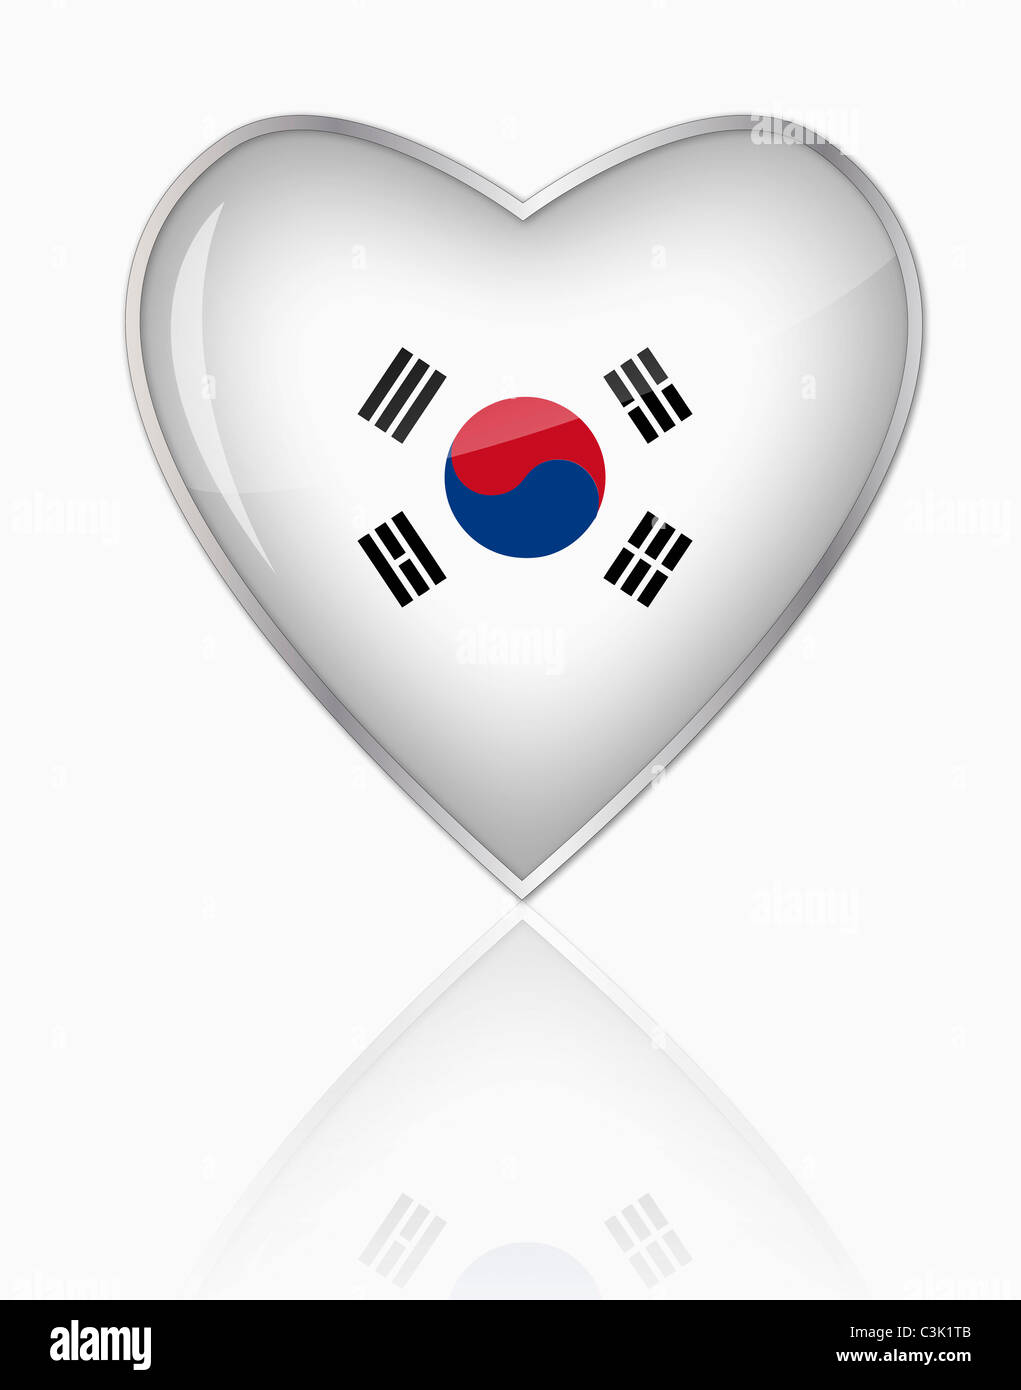 South Korean flag in heart shape on white background Stock Photo